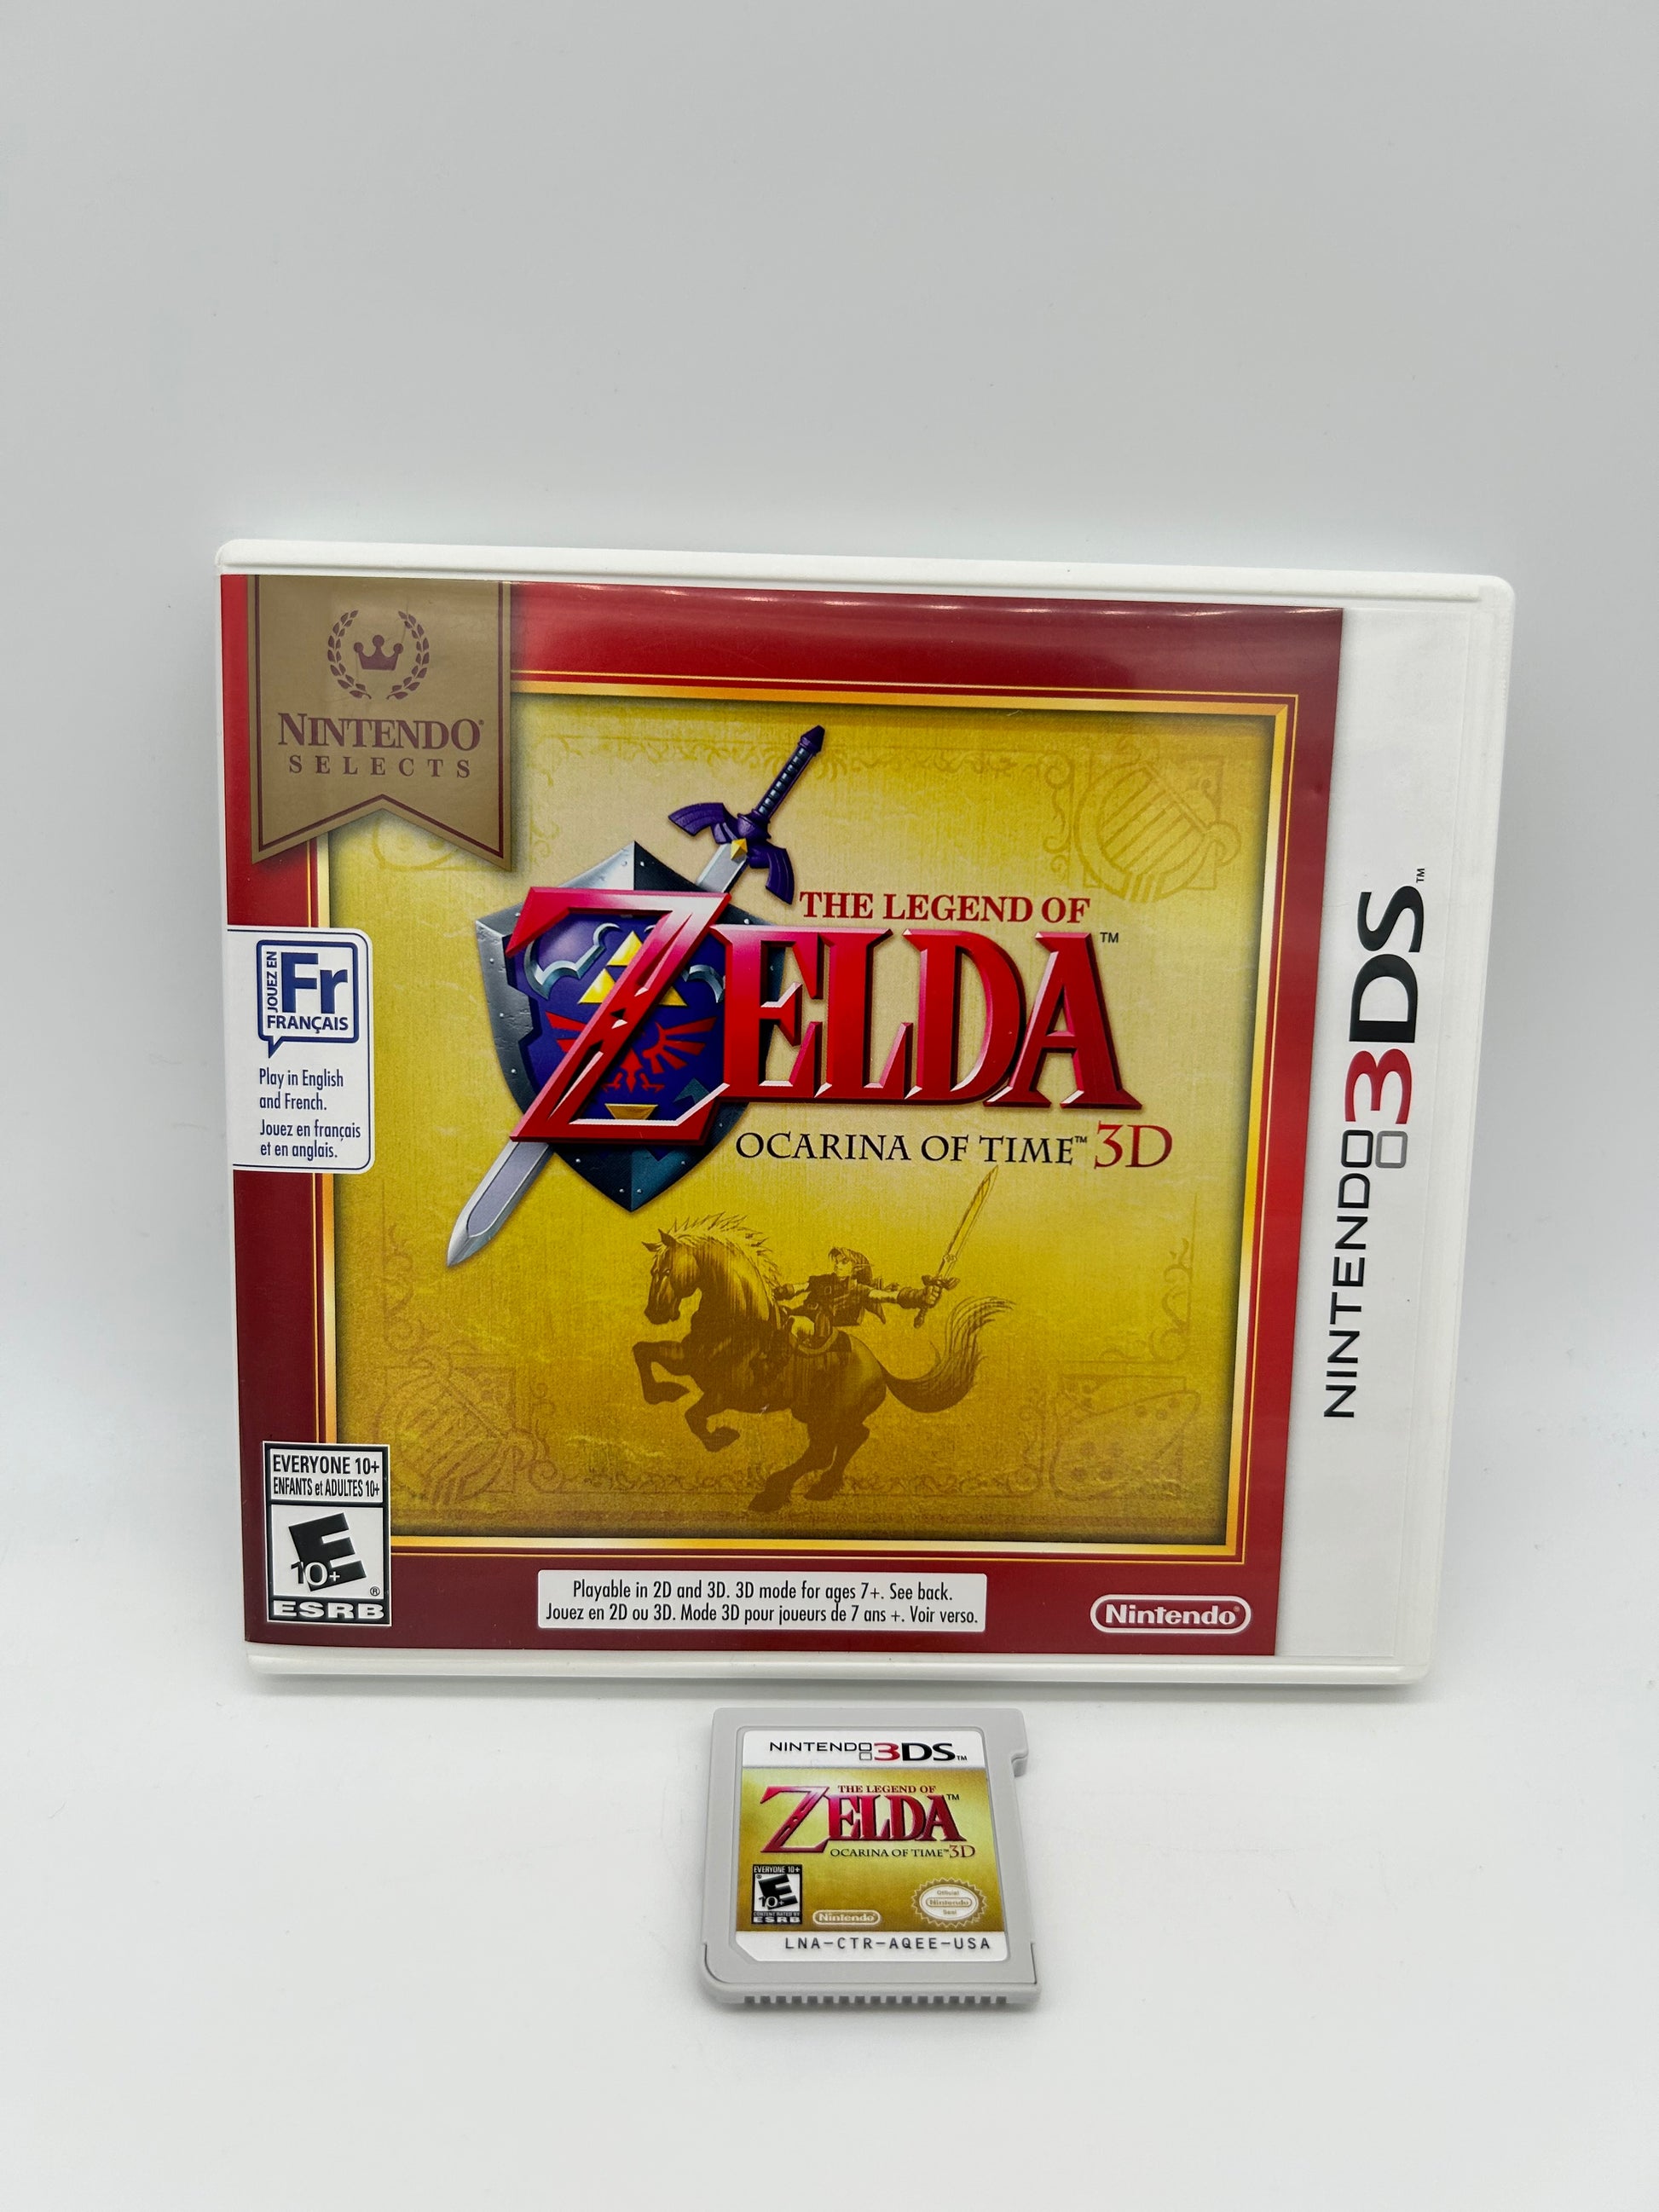 PiXEL-RETRO.COM : NINTENDO 3DS (3DS) THE LEGEND OF ZELDA : OCARINA OF TIME 3D COMPLETE CIB BOX MANUAL GAME NTSC